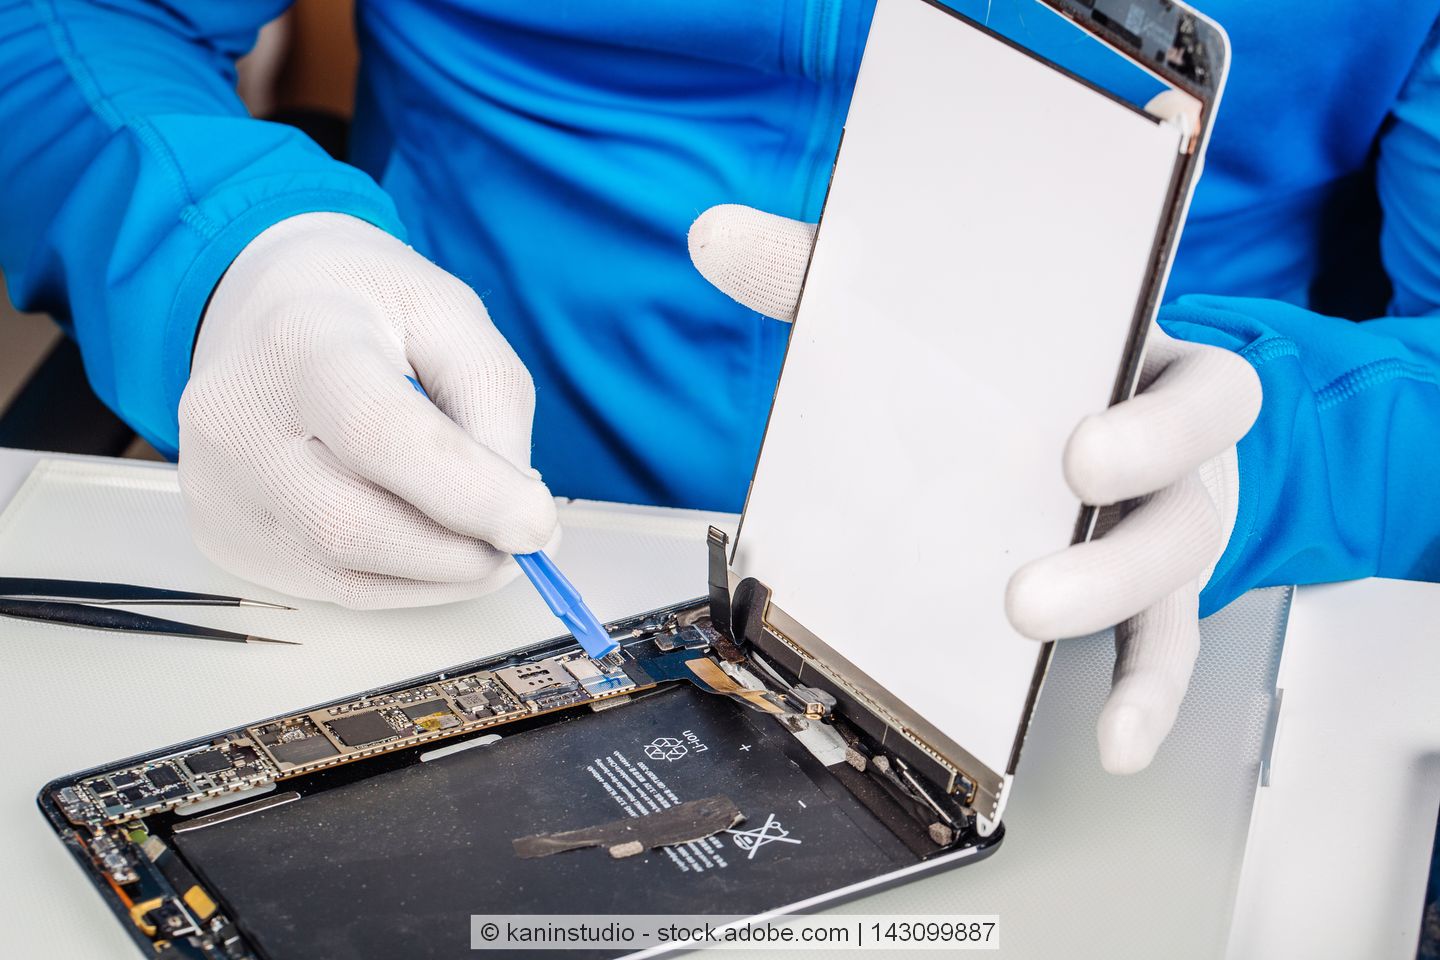 Ein Tablet wird repariert von einer Person mit einem blauen Oberteil und weißen Handschuhen.